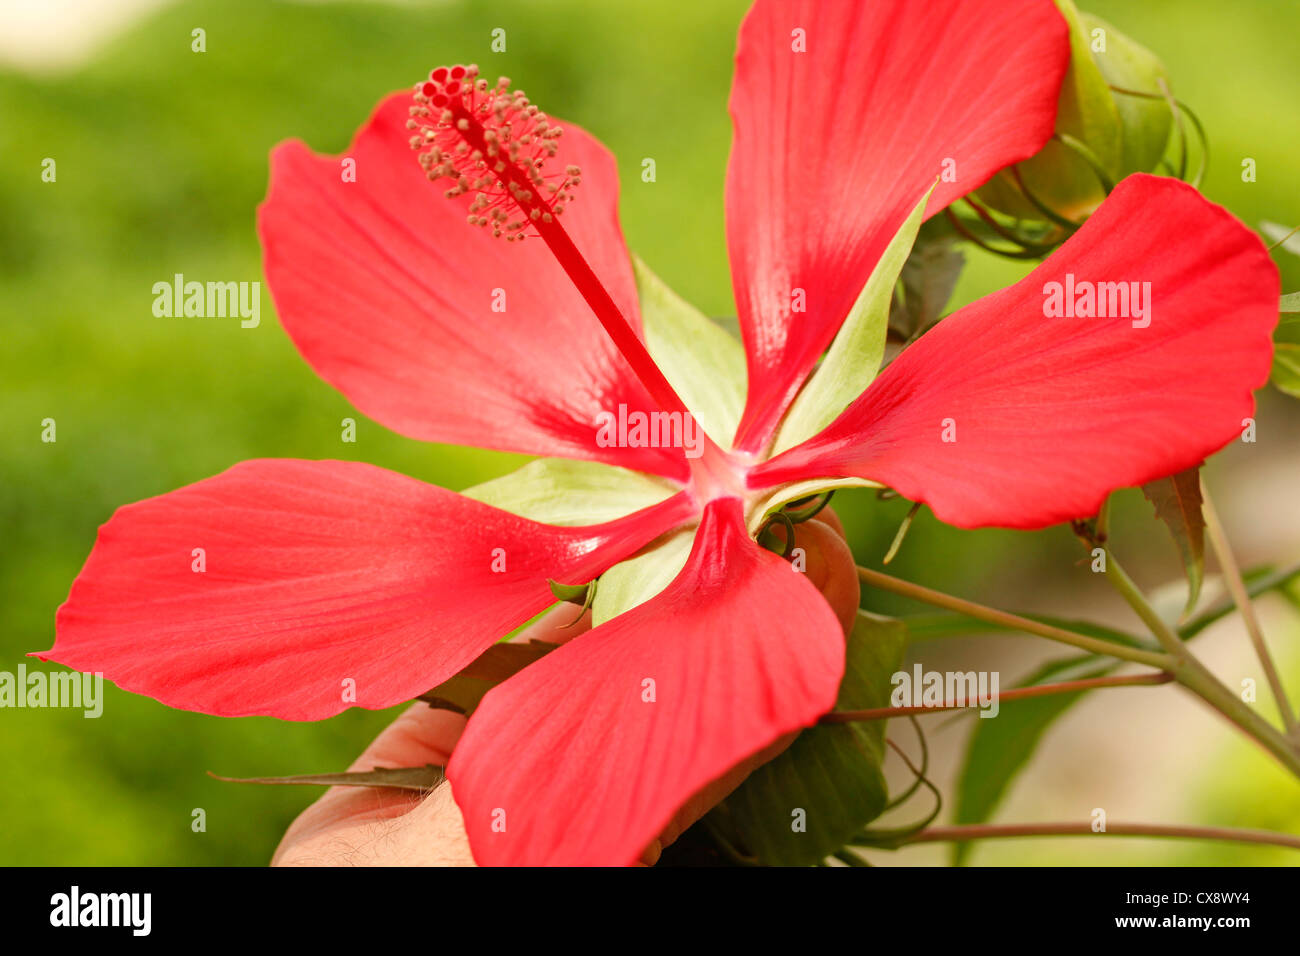 Rozelle. Medicinal red hibiscus. Hibiscus sabdariffa. Stock Photo